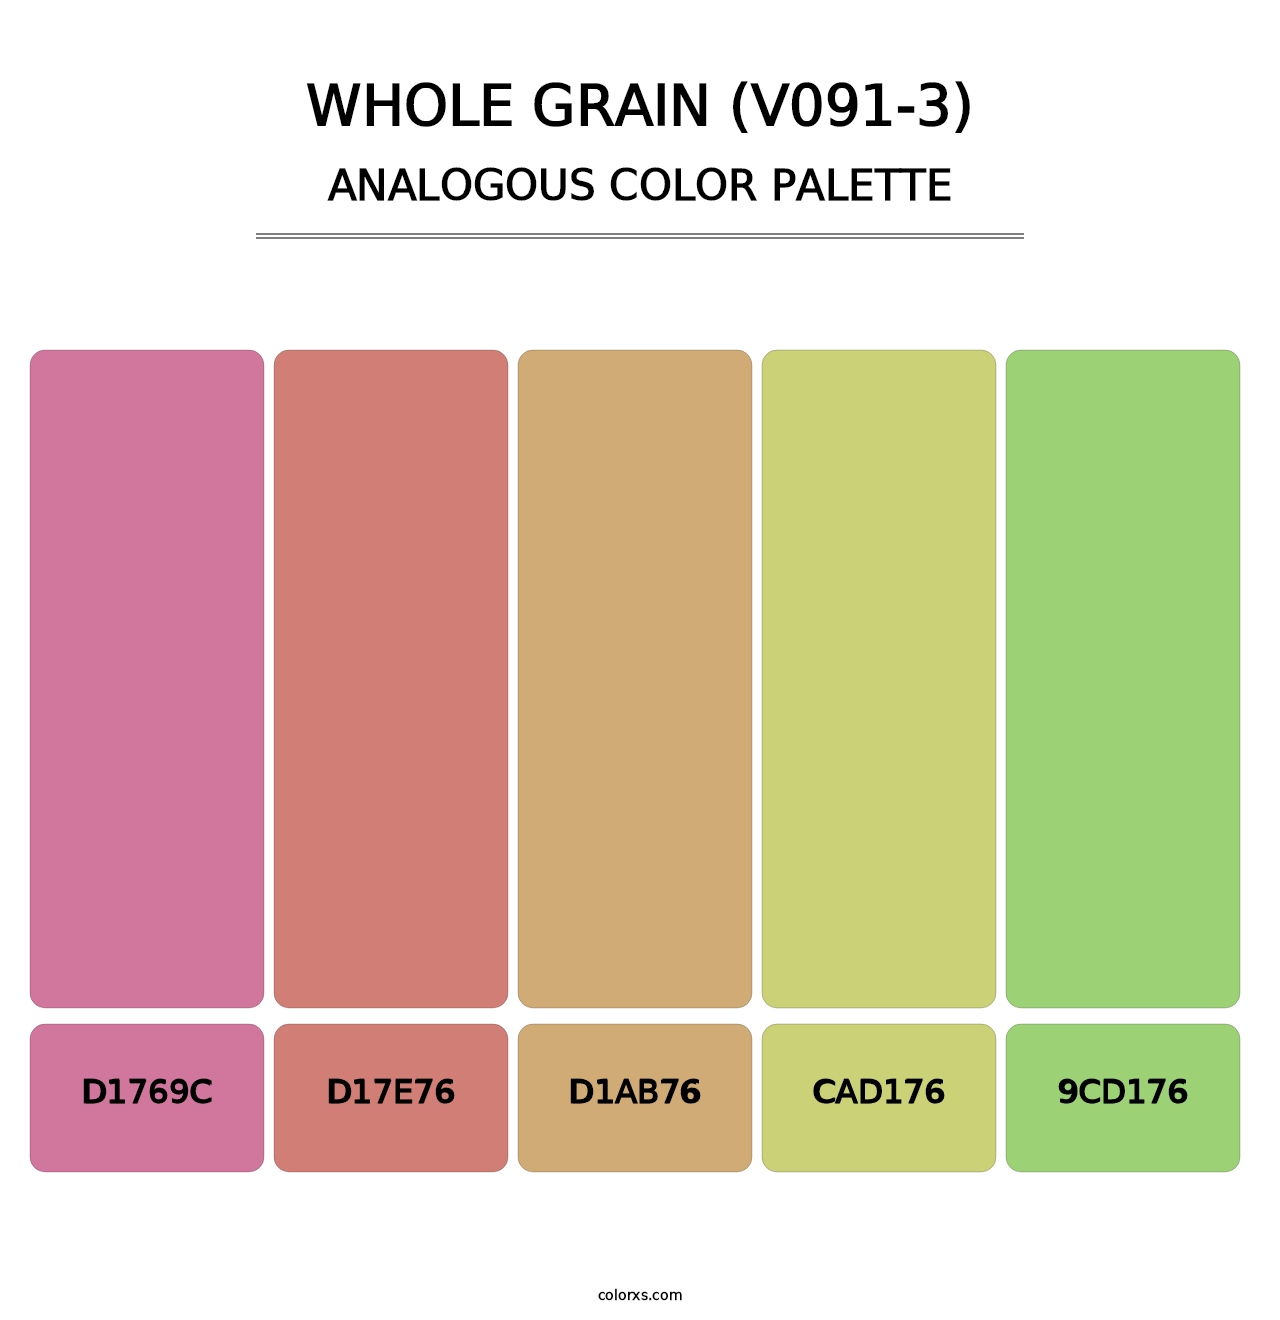 Whole Grain (V091-3) - Analogous Color Palette